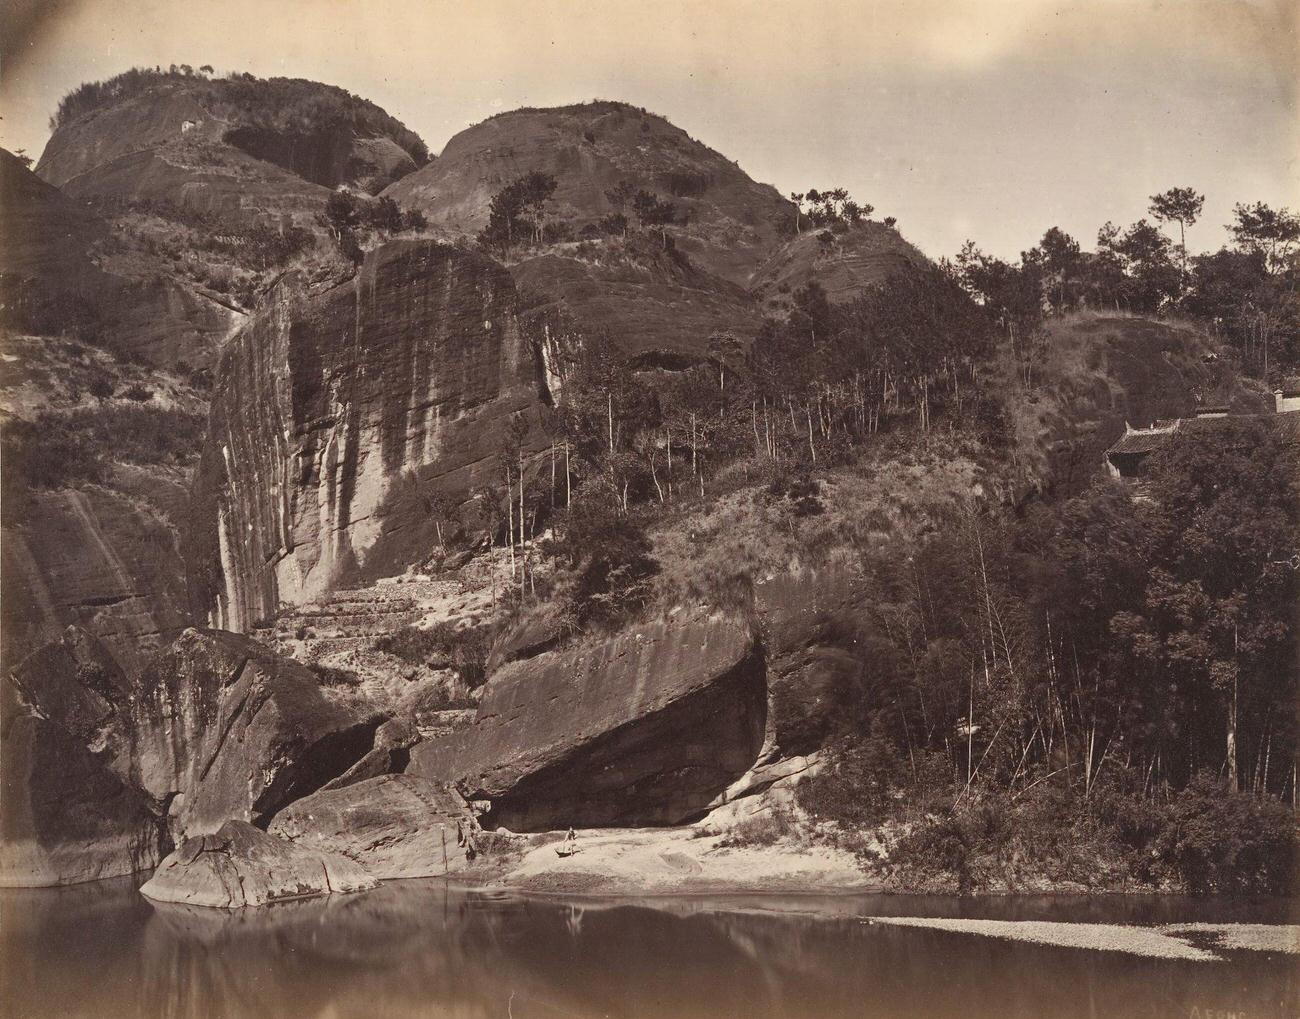 Hisiu Peak, 1869